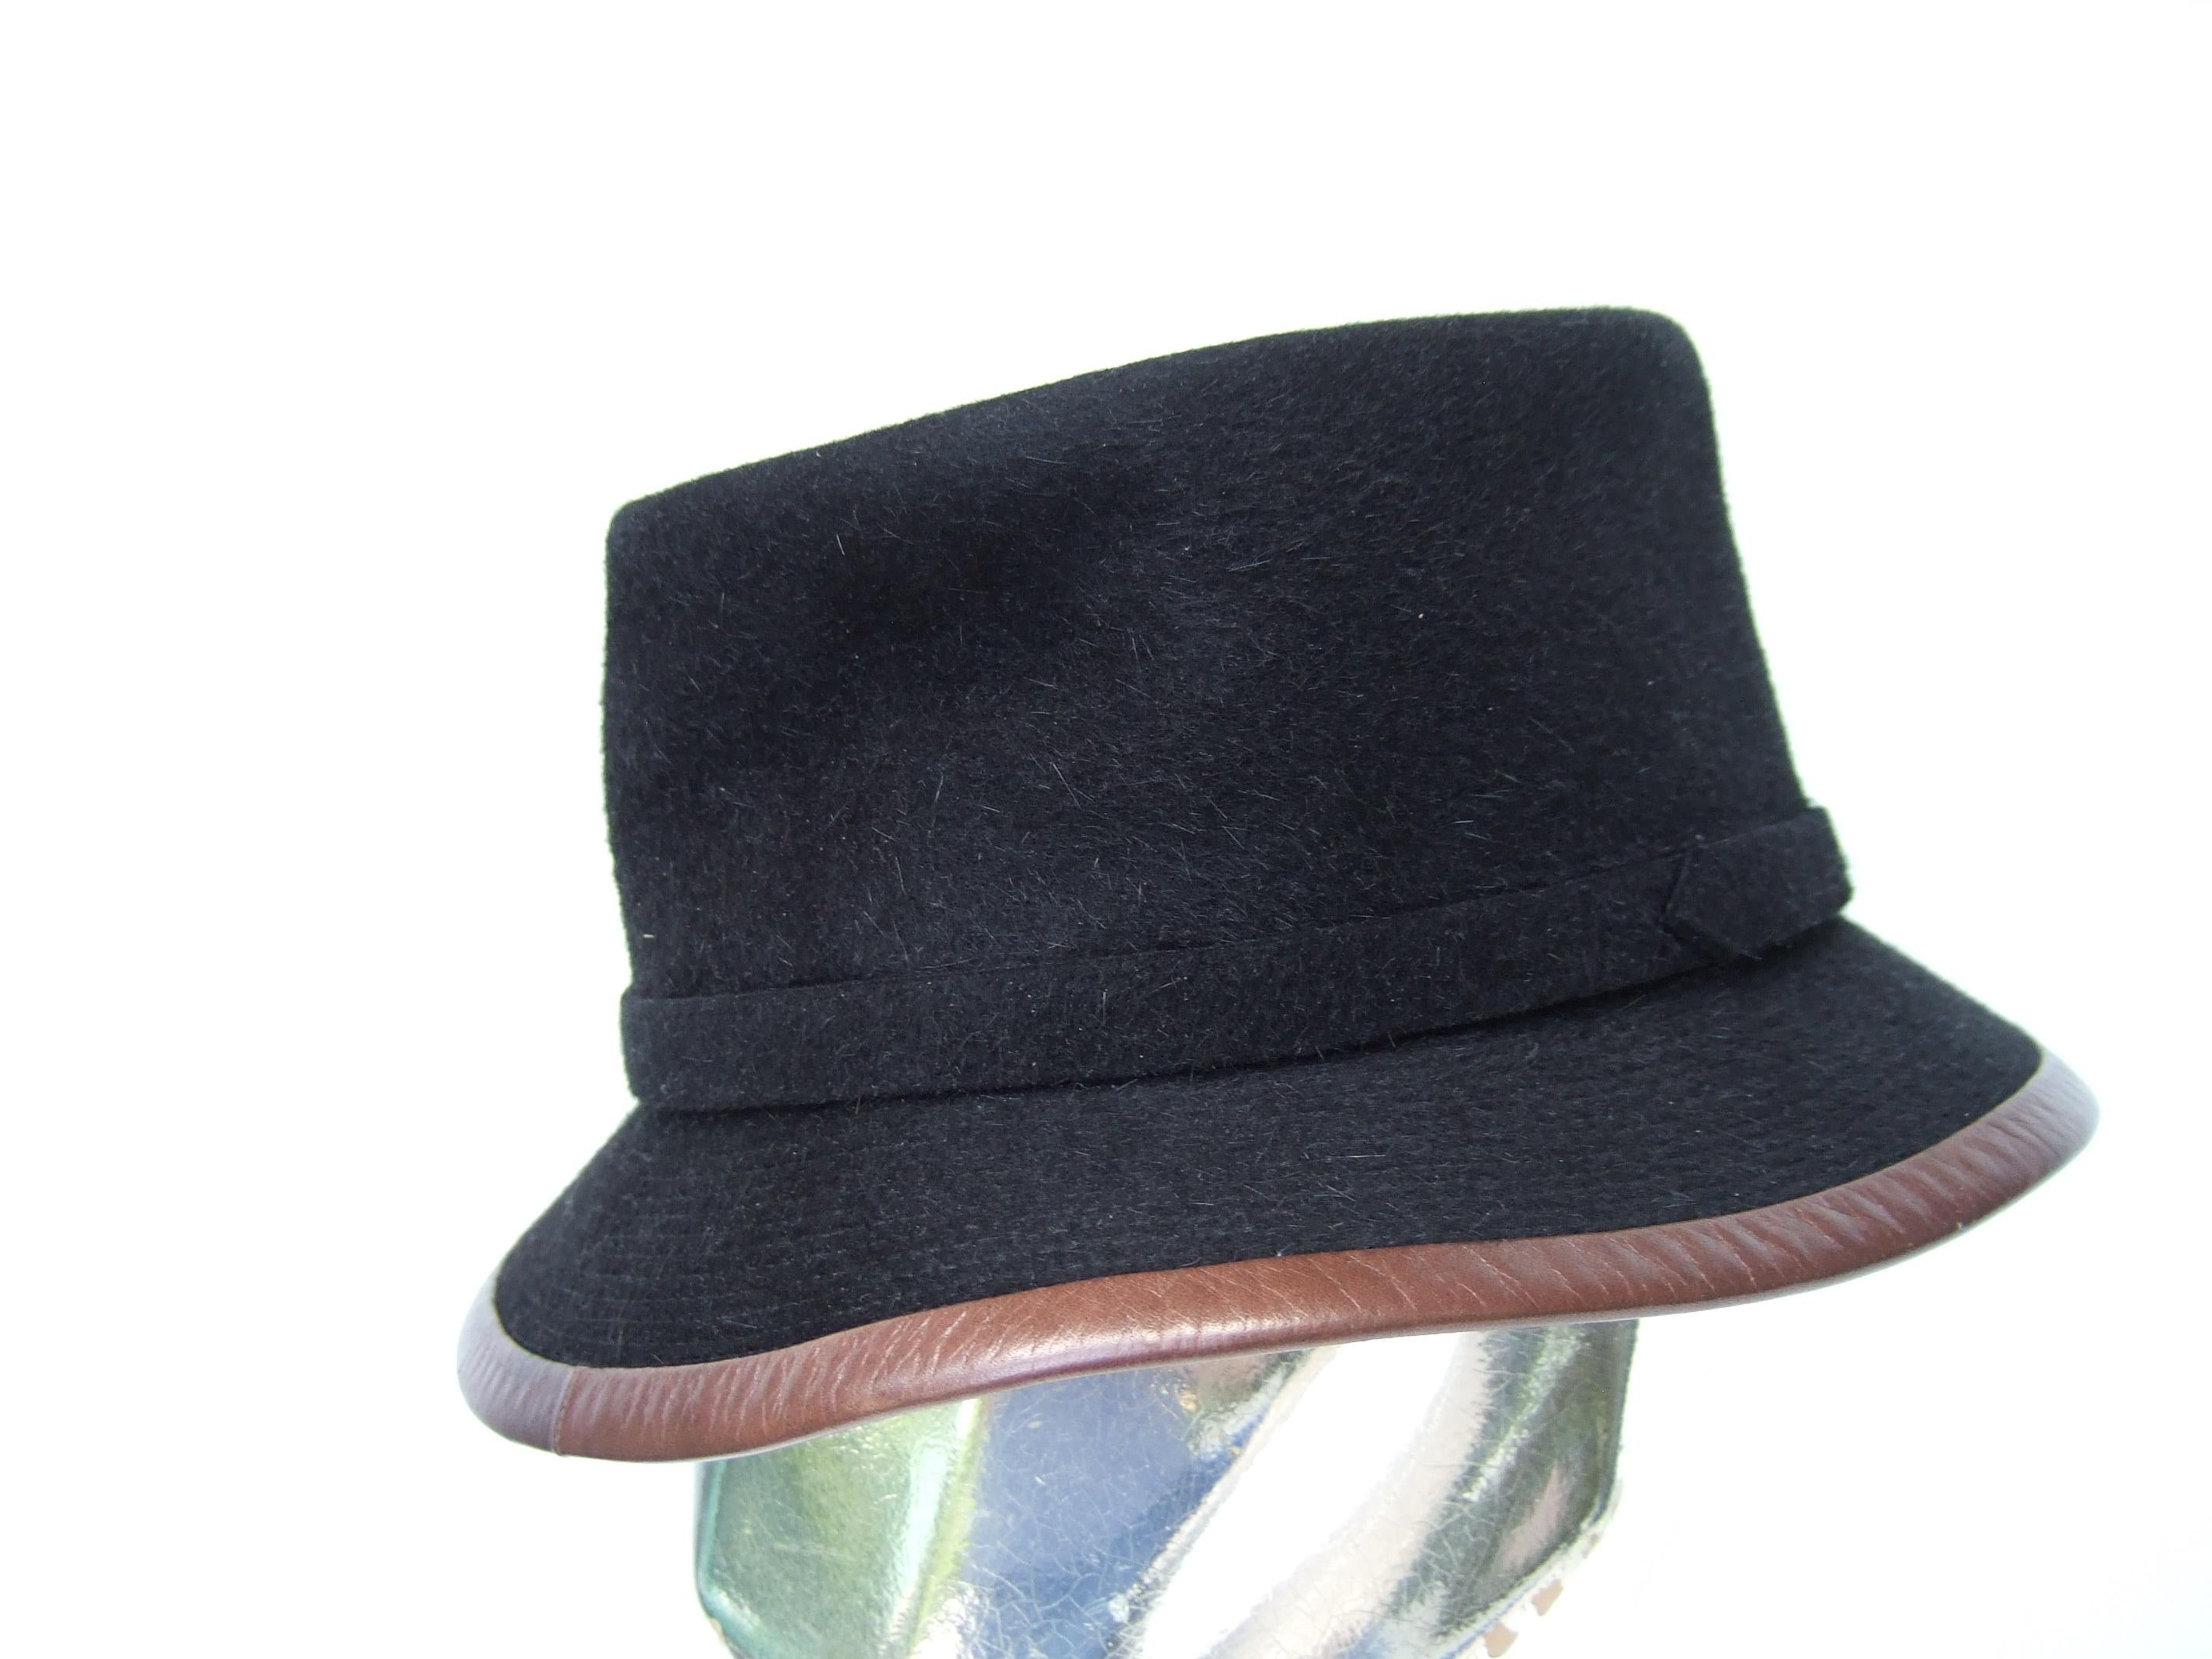 Hermes Paris Black Wool Leather Trim Hat Labeled Motsch Chapeaux Pour Hermes  For Sale 1